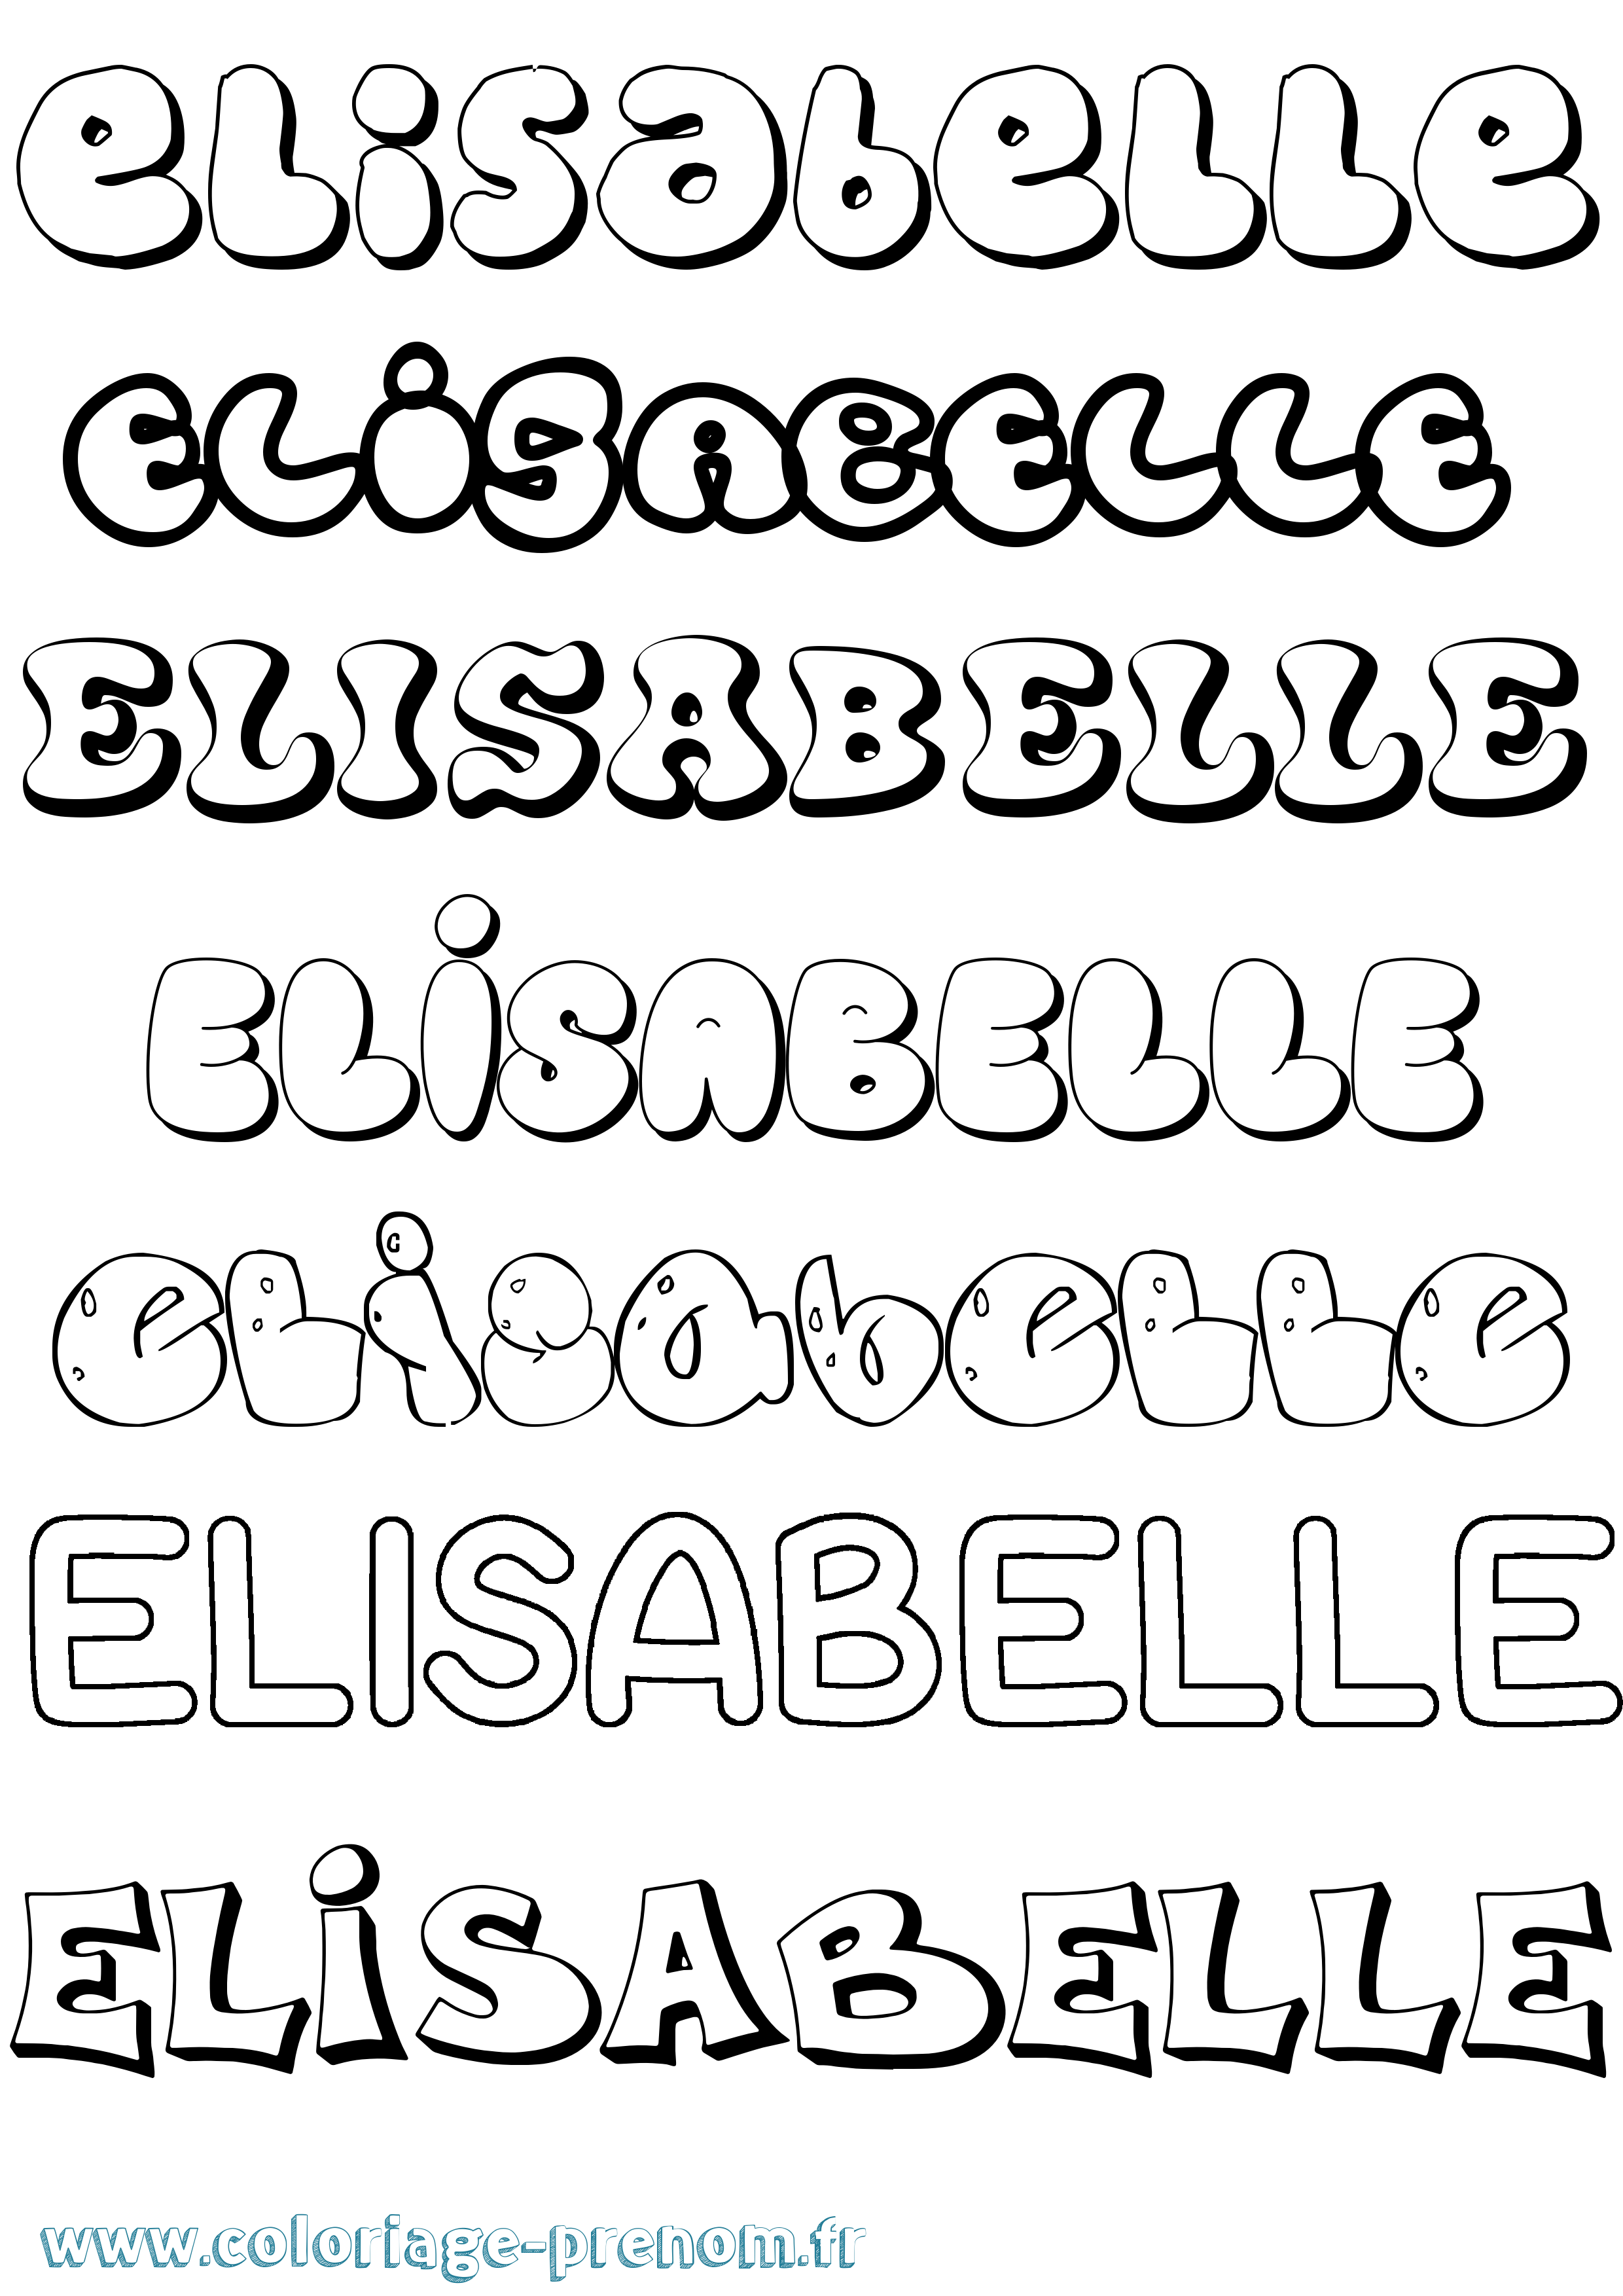 Coloriage prénom Elisabelle Bubble